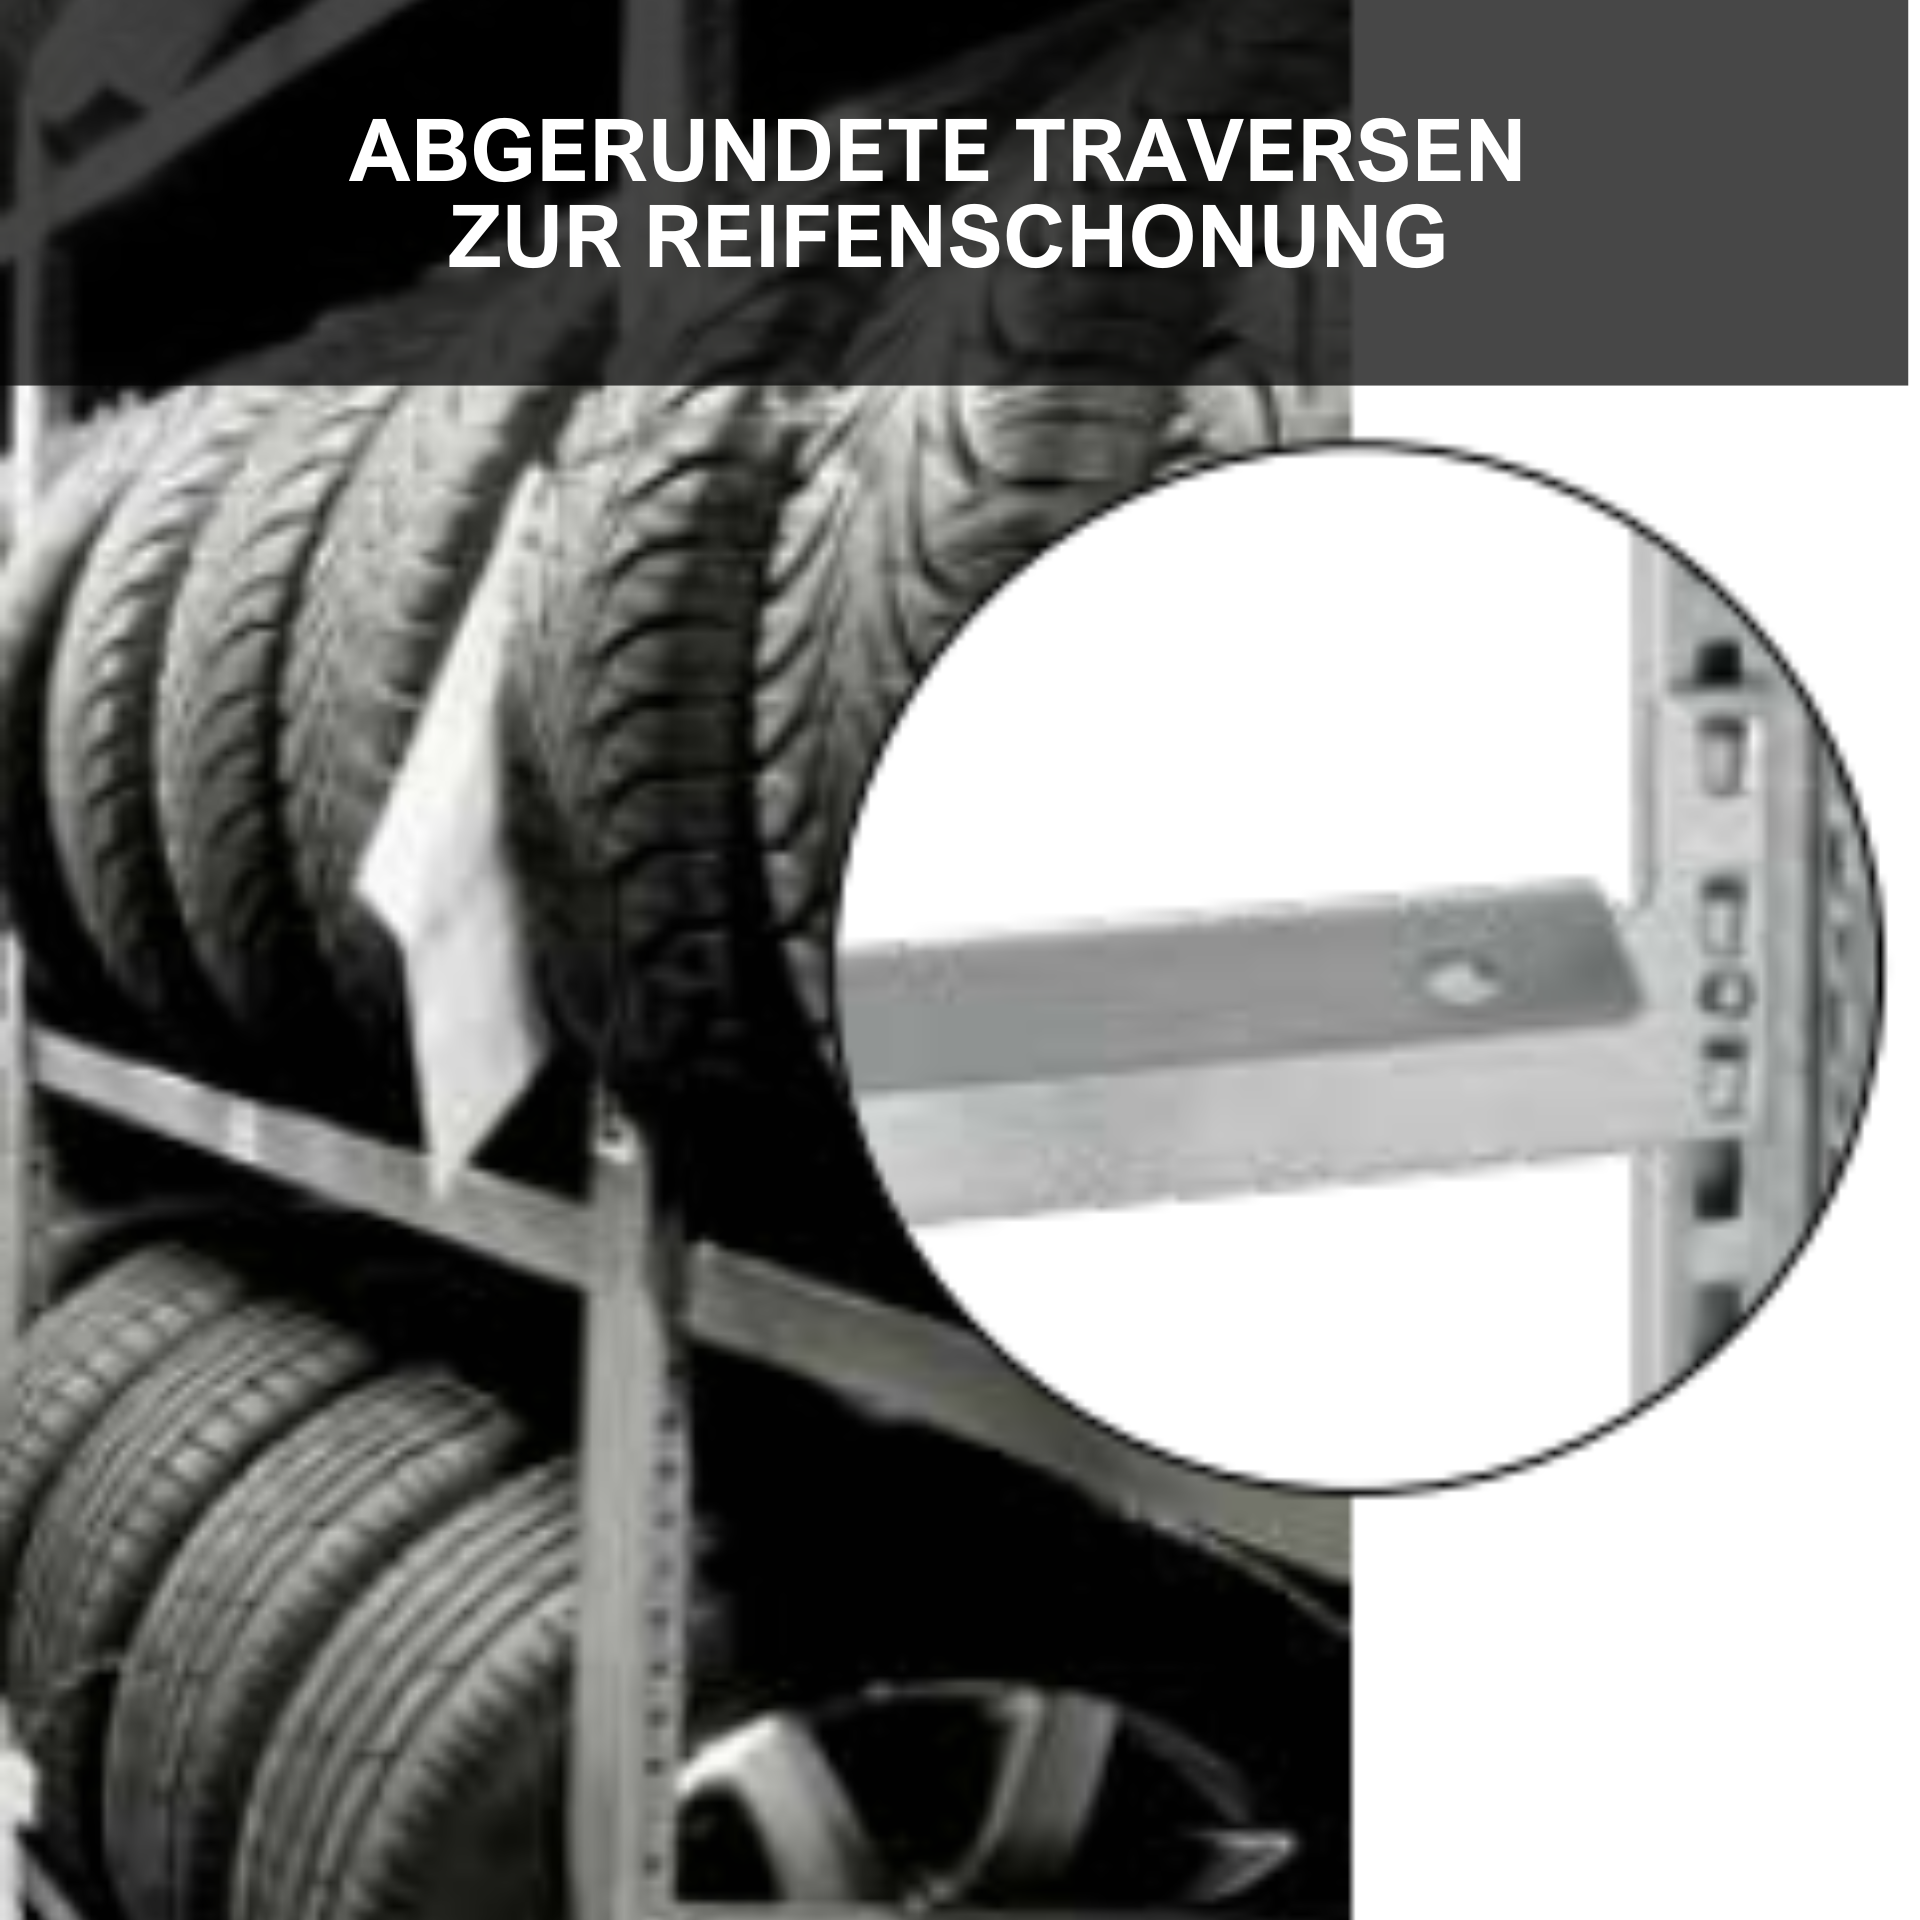 Reifenregal TIRE PRO Made in Germany | HxBxT 200x150x43cm | 3 Ebenen | 150kg Fachlast | Bis zu 7 Reifen pro Ebene | Verzinkt